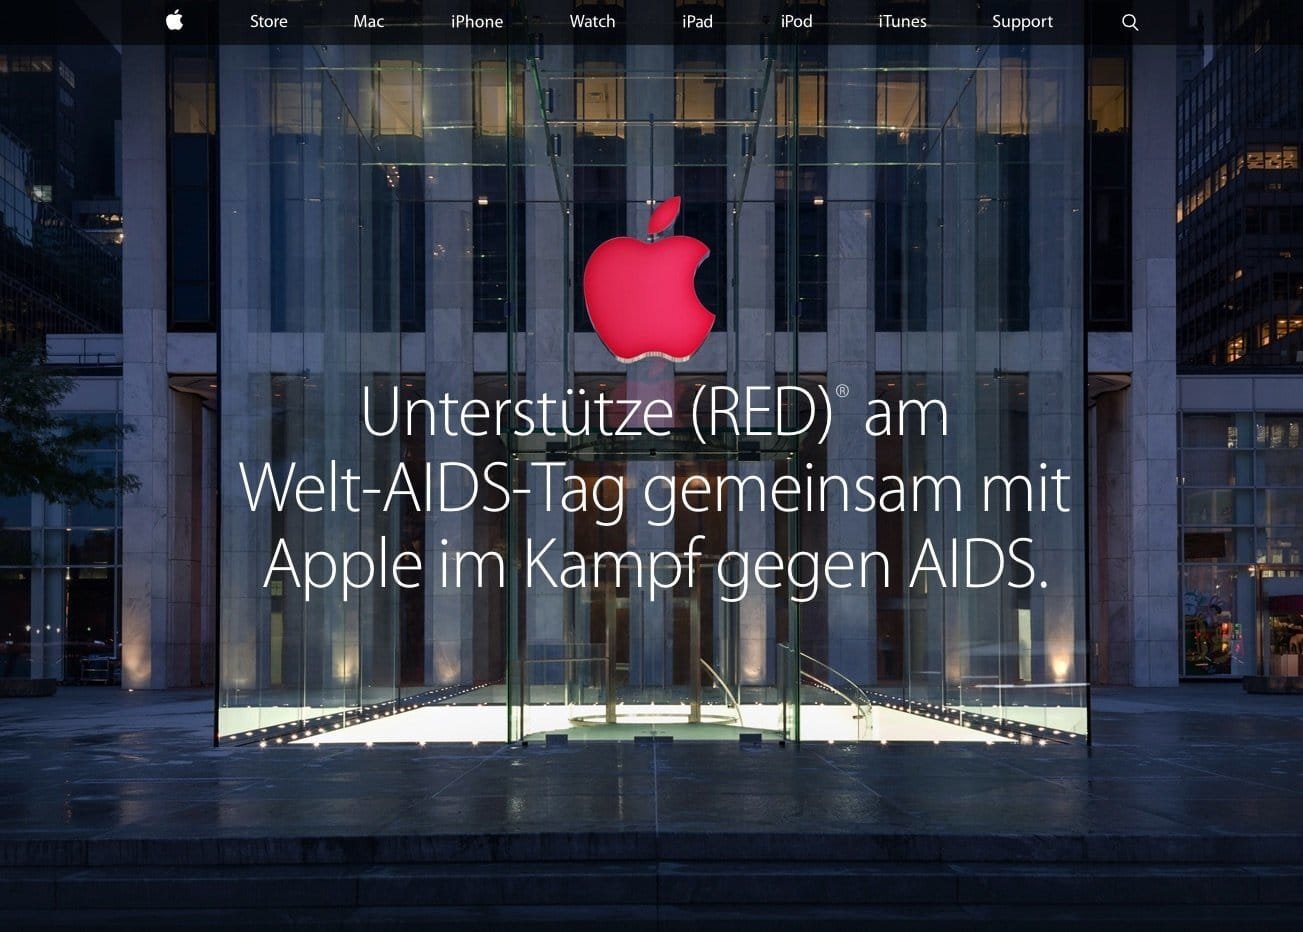 Black Friday 2014: Apple ohne Angebote in Deutschland - Macnotes.de